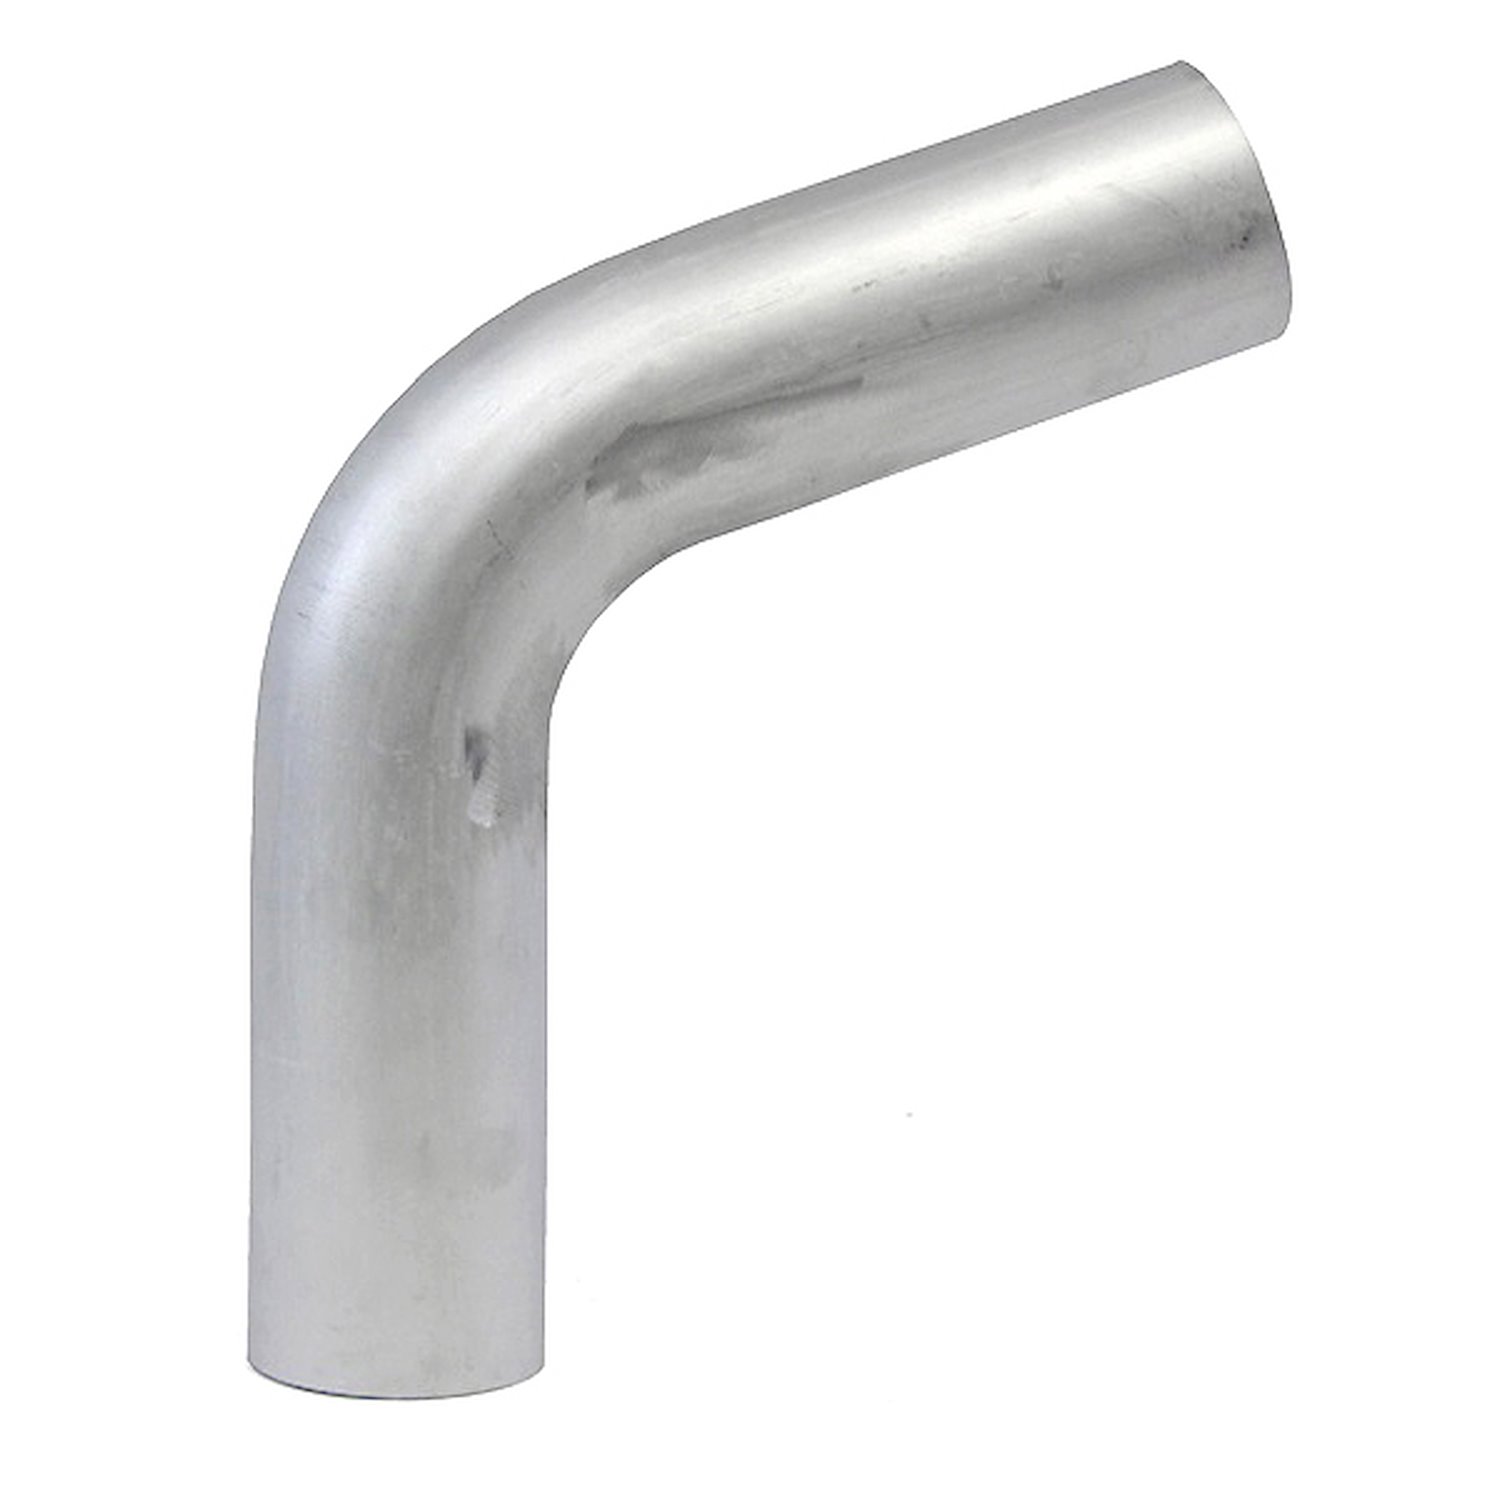 AT70-225-CLR-225 Aluminum Elbow Tube, 6061 Aluminum, 70-Degree Bend Elbow Tubing, 2-1/4 in. OD, Large Radius, 2-1/4 in. CLR